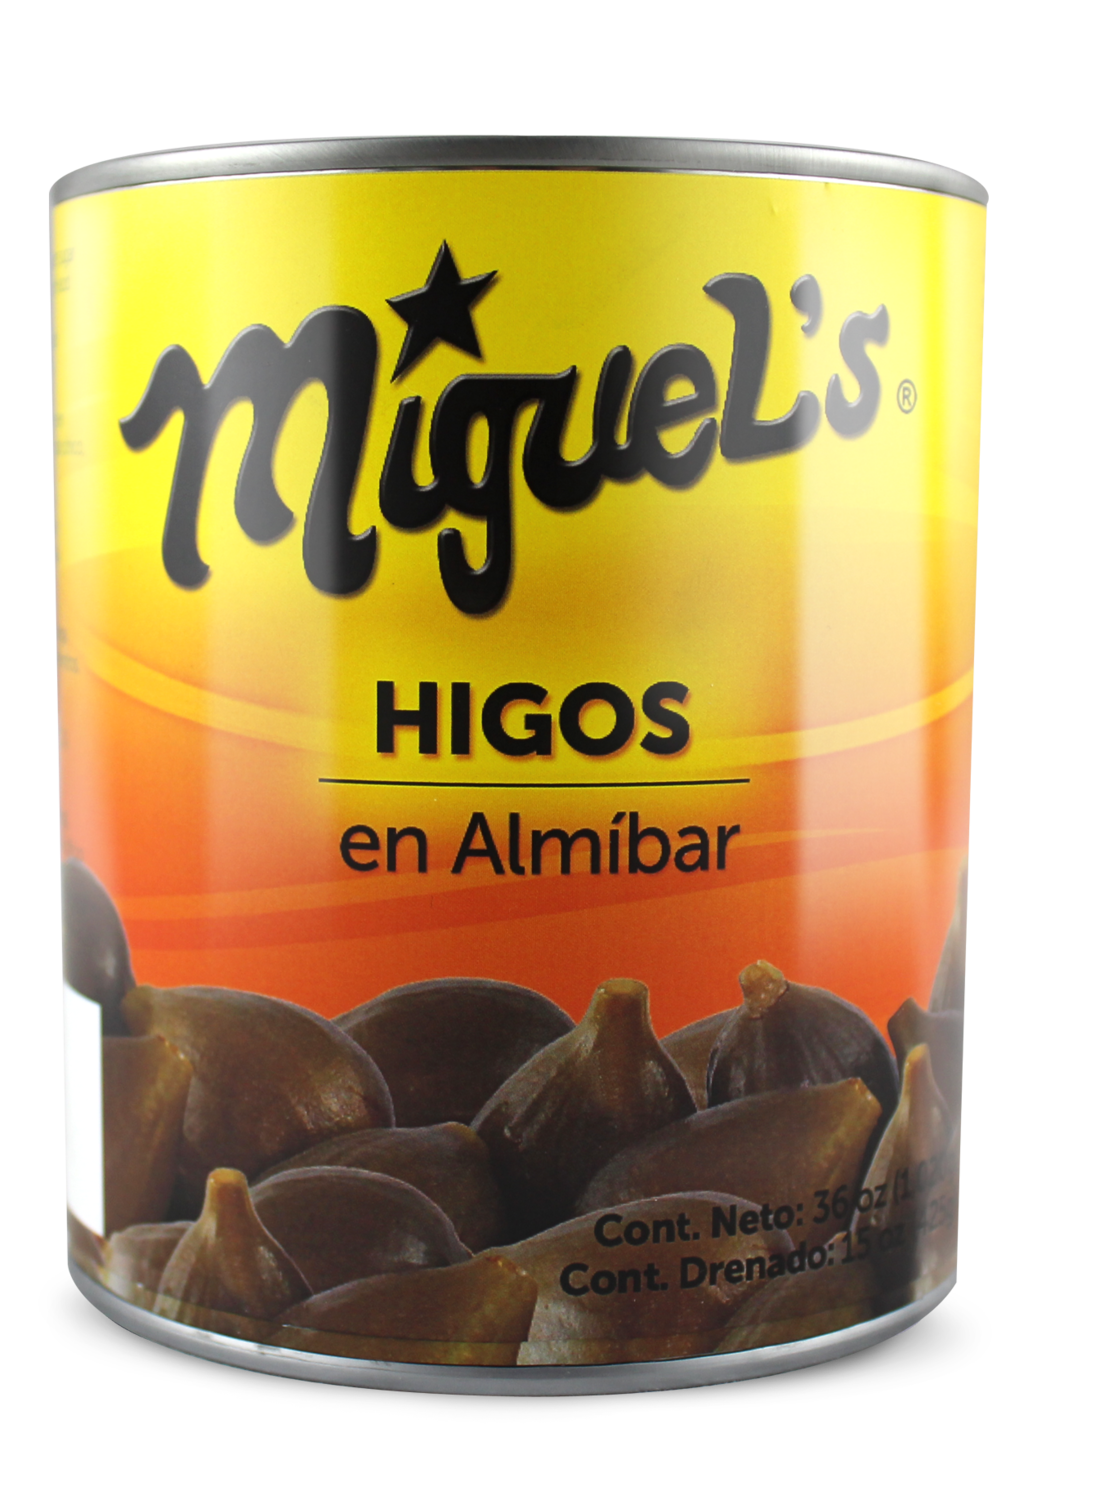 Higos en Almibar Miguel's 36oz